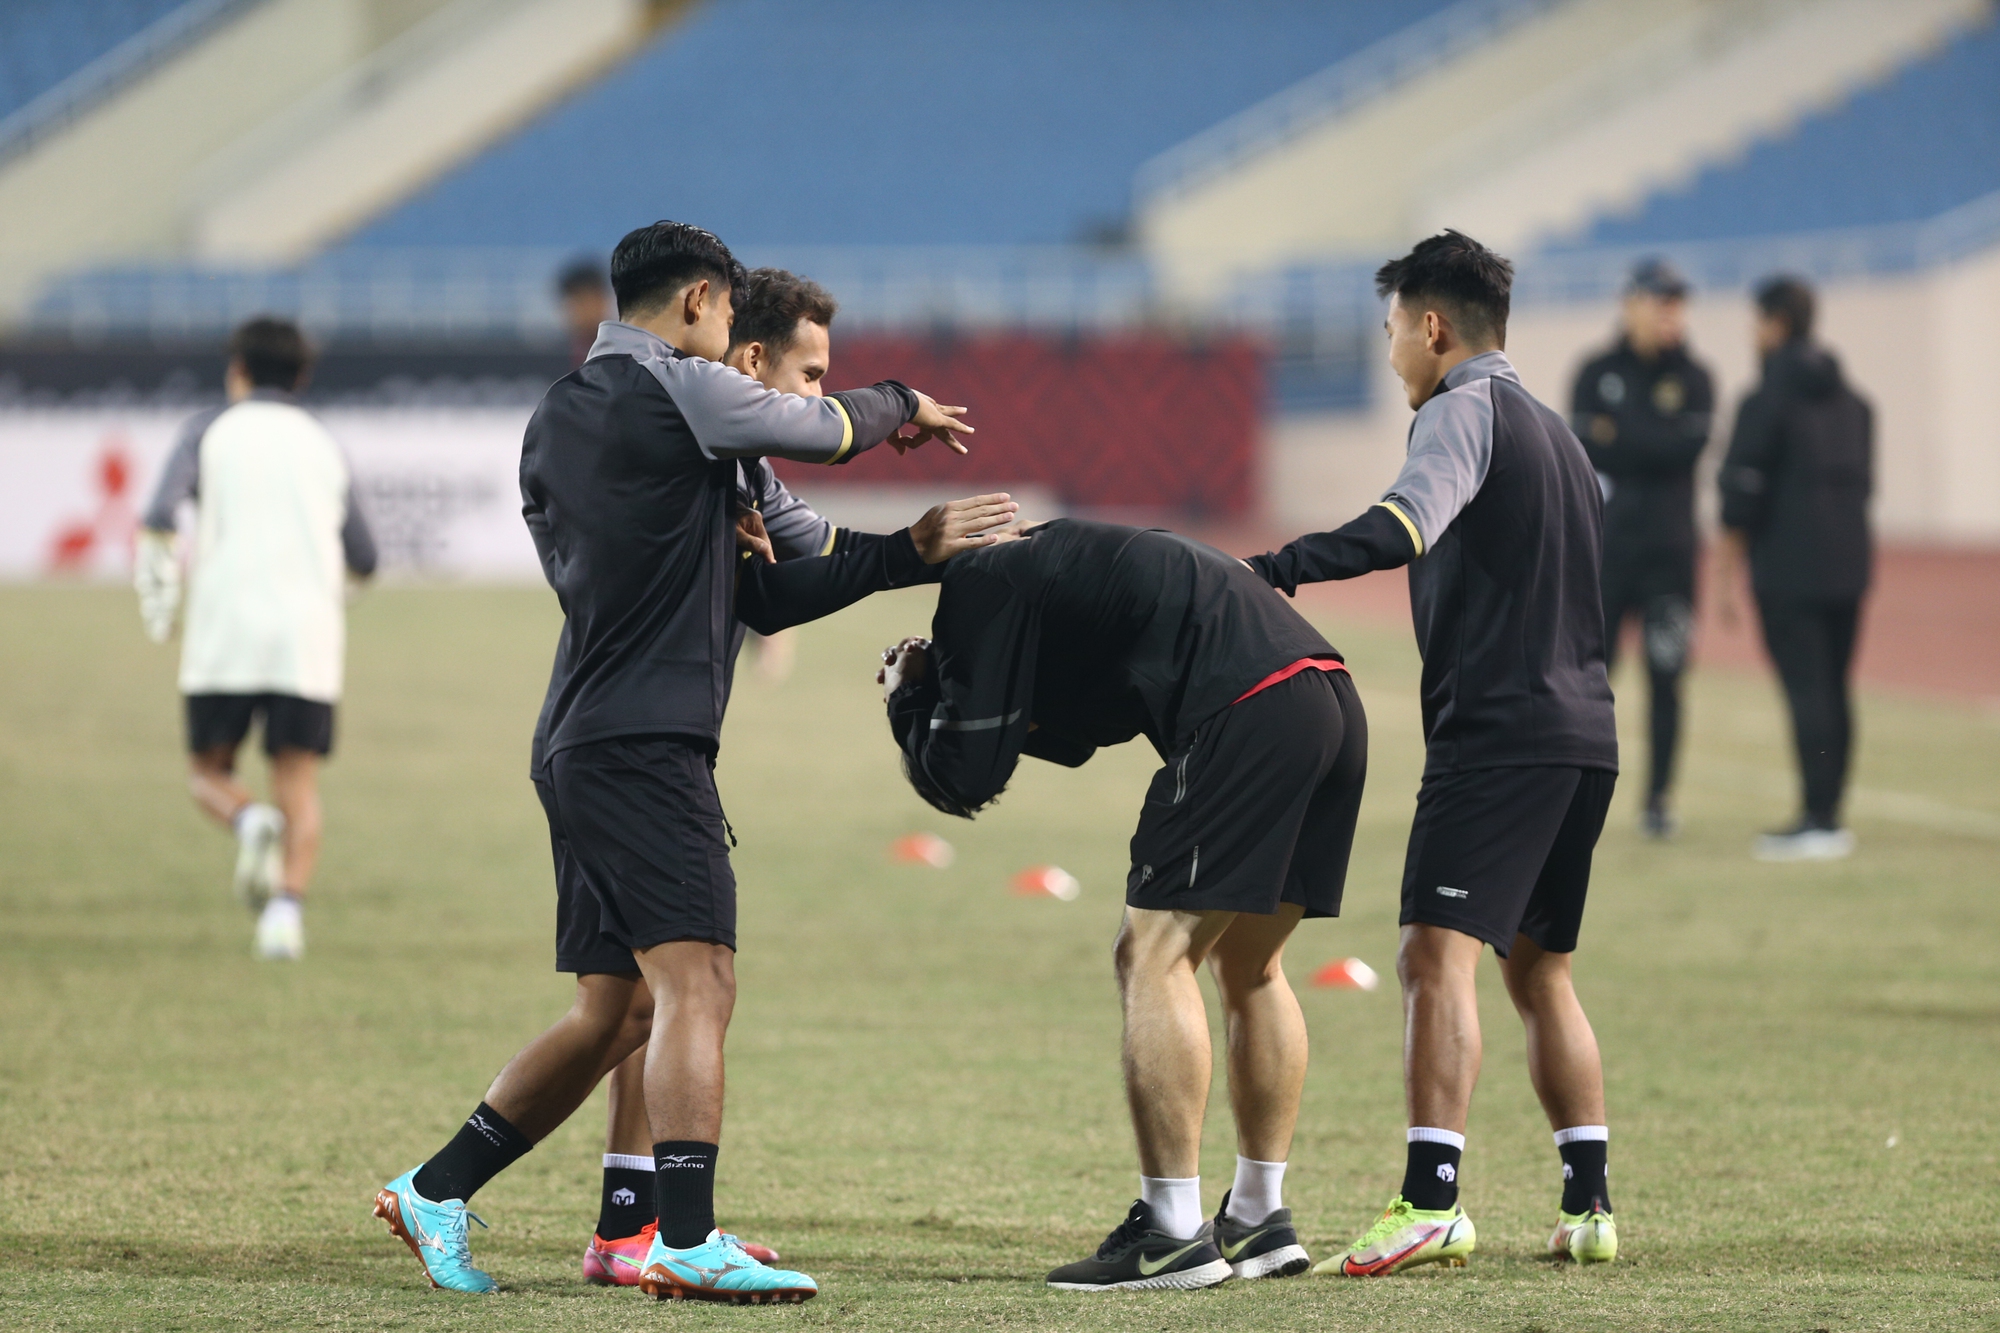 HLV Shin Tae Yong kiểm tra mặt sân, các cầu thủ Indonesia thoải mái trước trận đấu với Việt Nam - Ảnh 5.